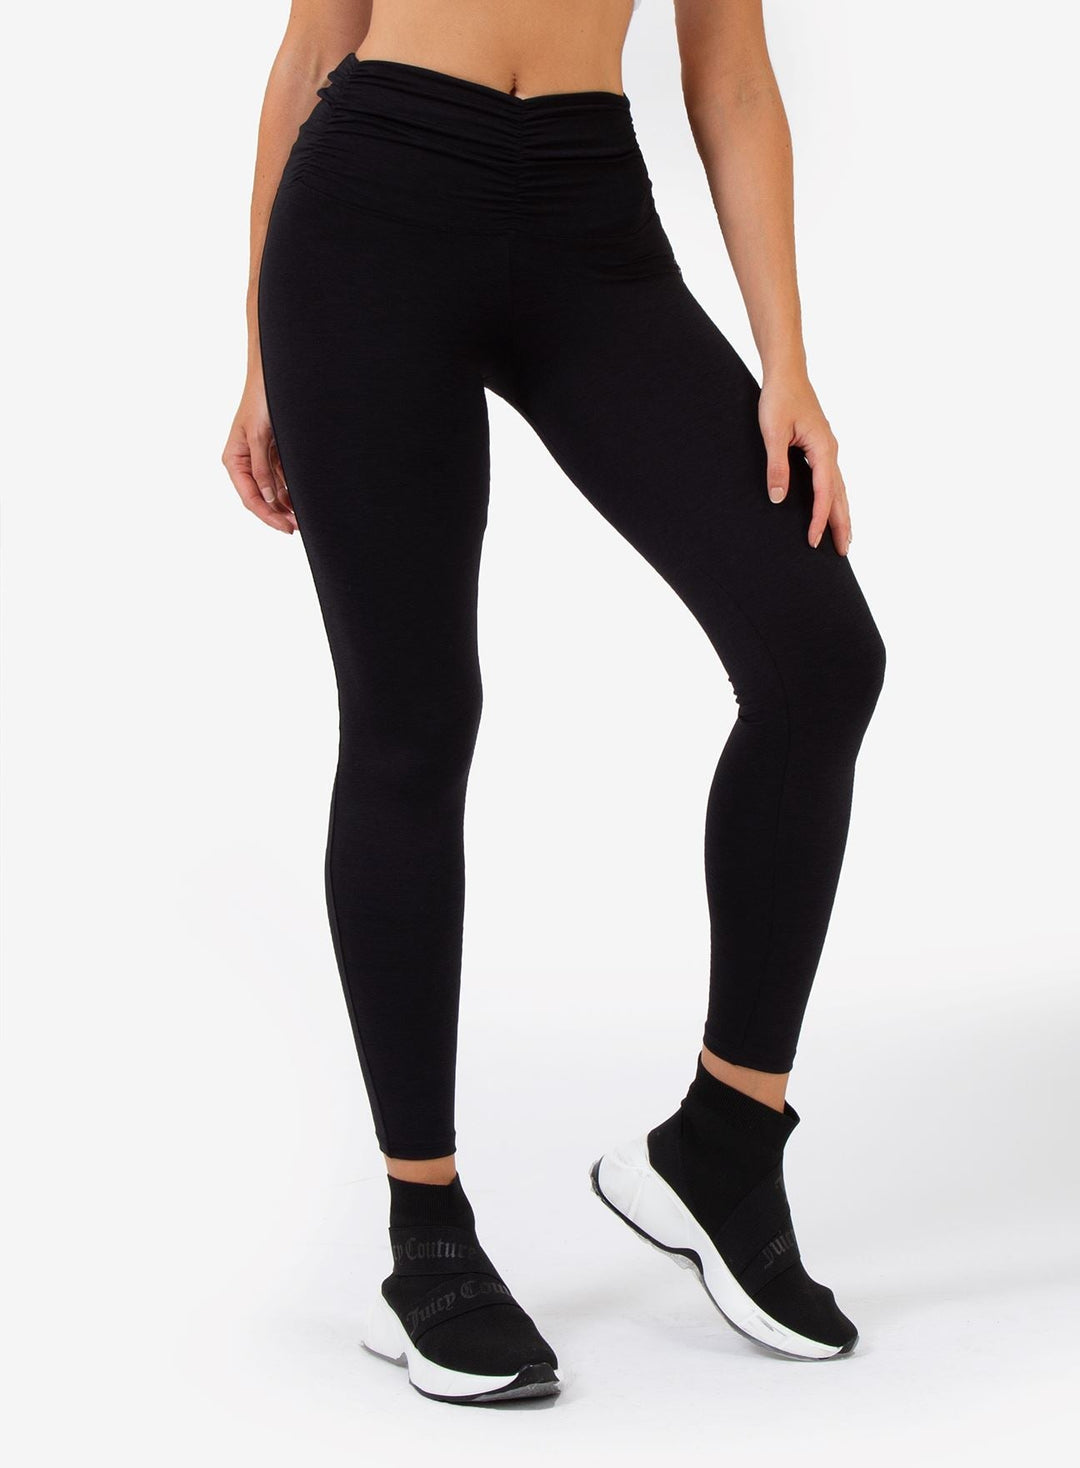 Legging Spacedye Scrunch - Black Leggings WinFitnesswear 